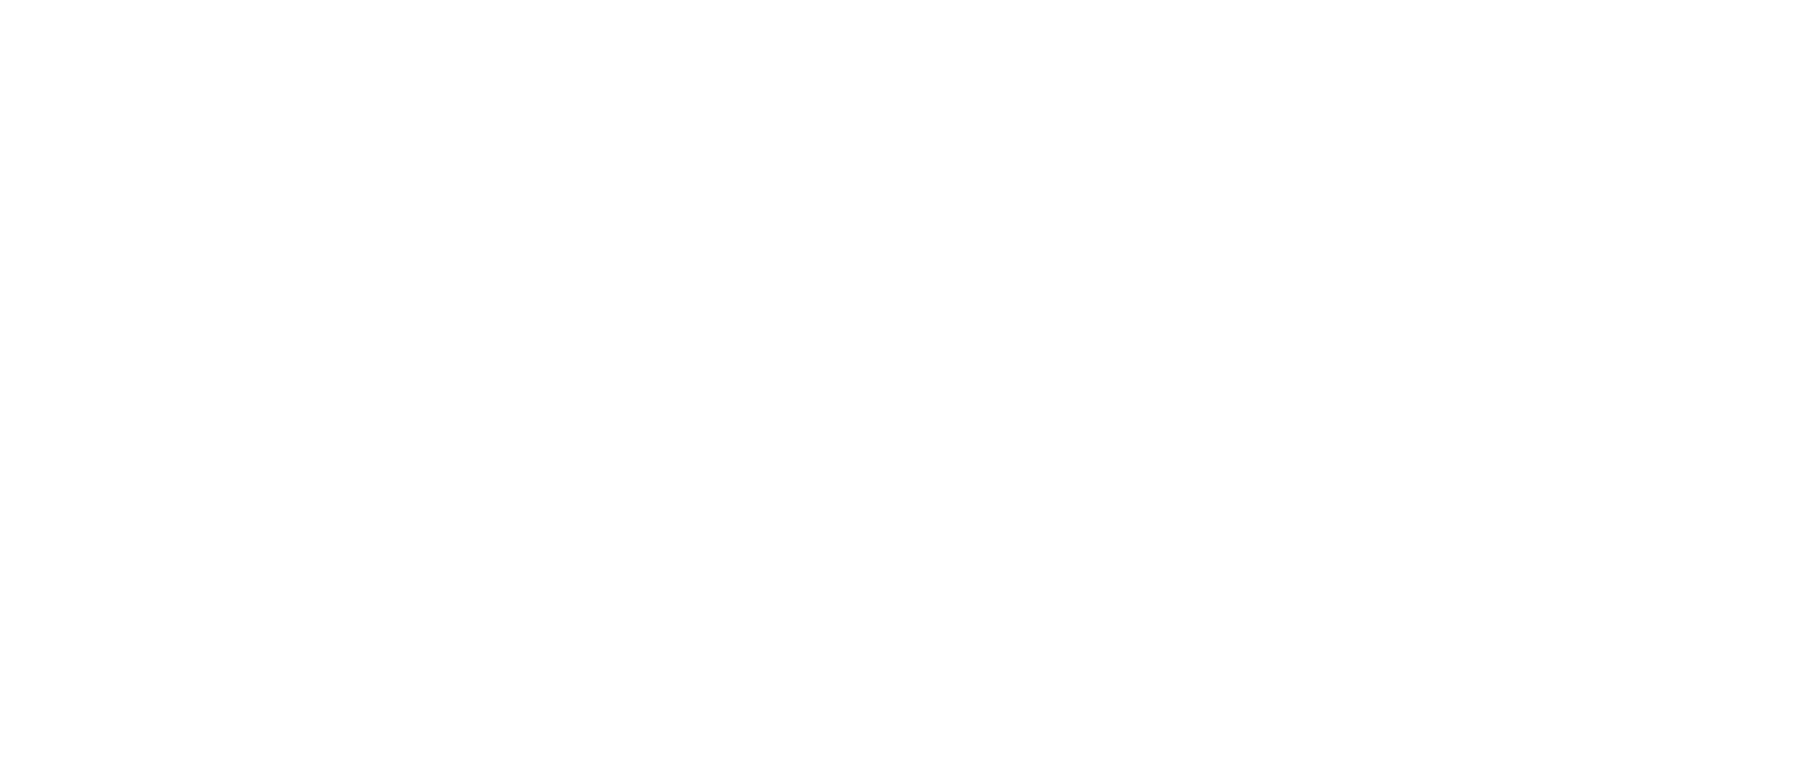 logo ihhrm g23.0